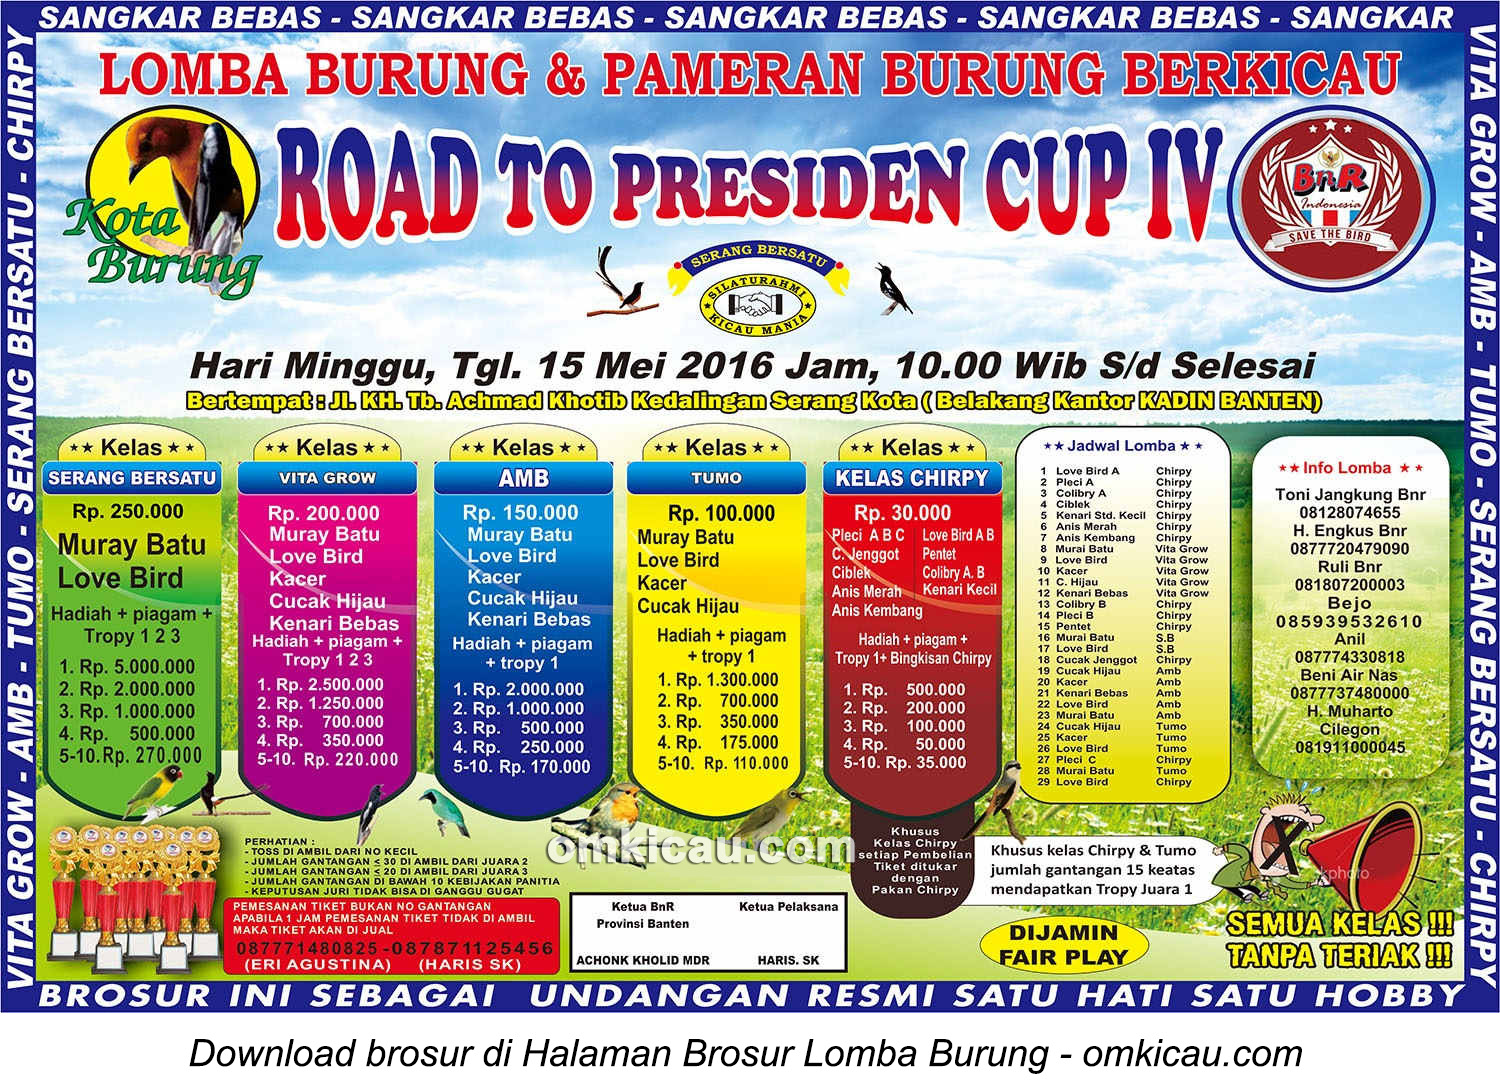 Brosur Lomba Burung Berkicau Road to Presiden Cup IV, Kota Serang, 15 Mei 2016